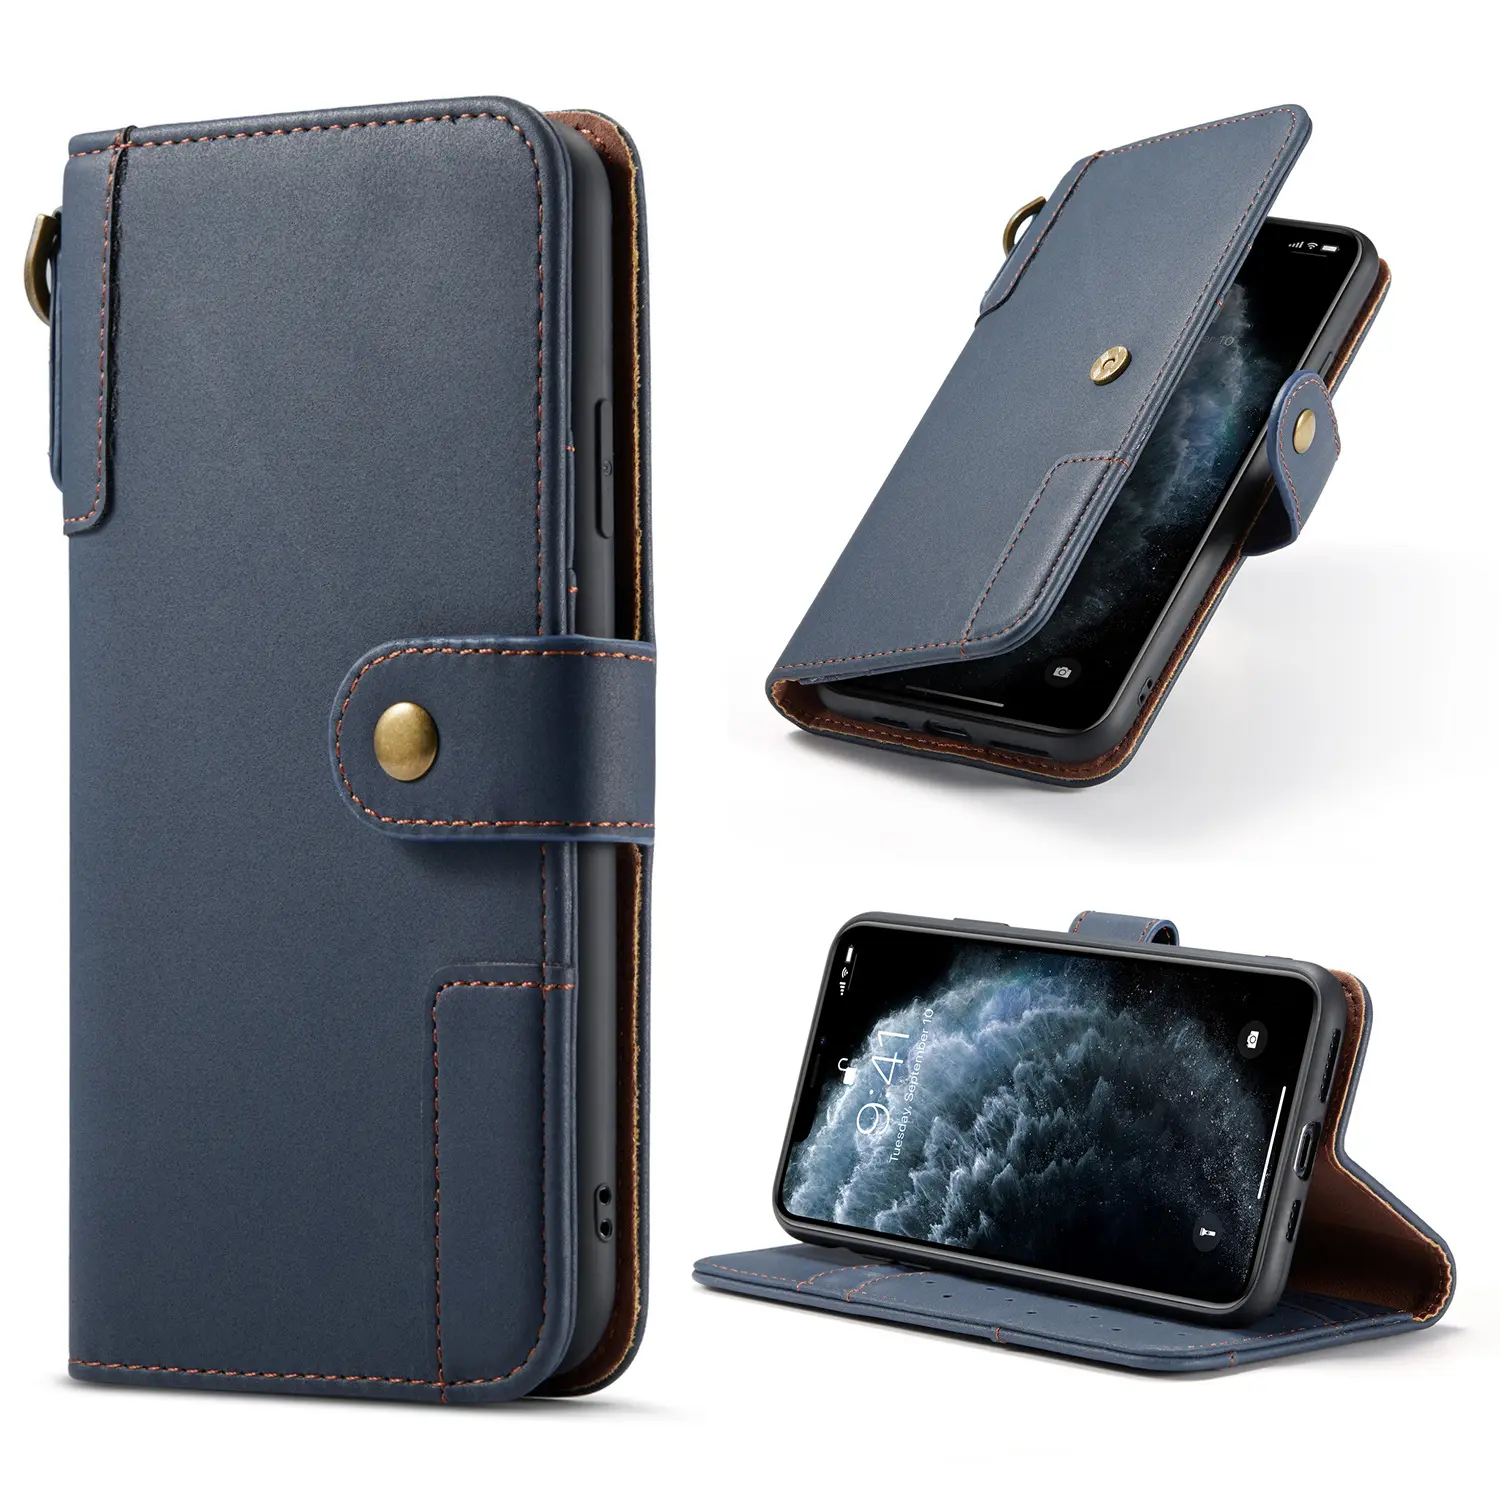 Casing dompet Flip tahan guncangan Premium UNTUK 12 13 penutup ponsel kulit asli